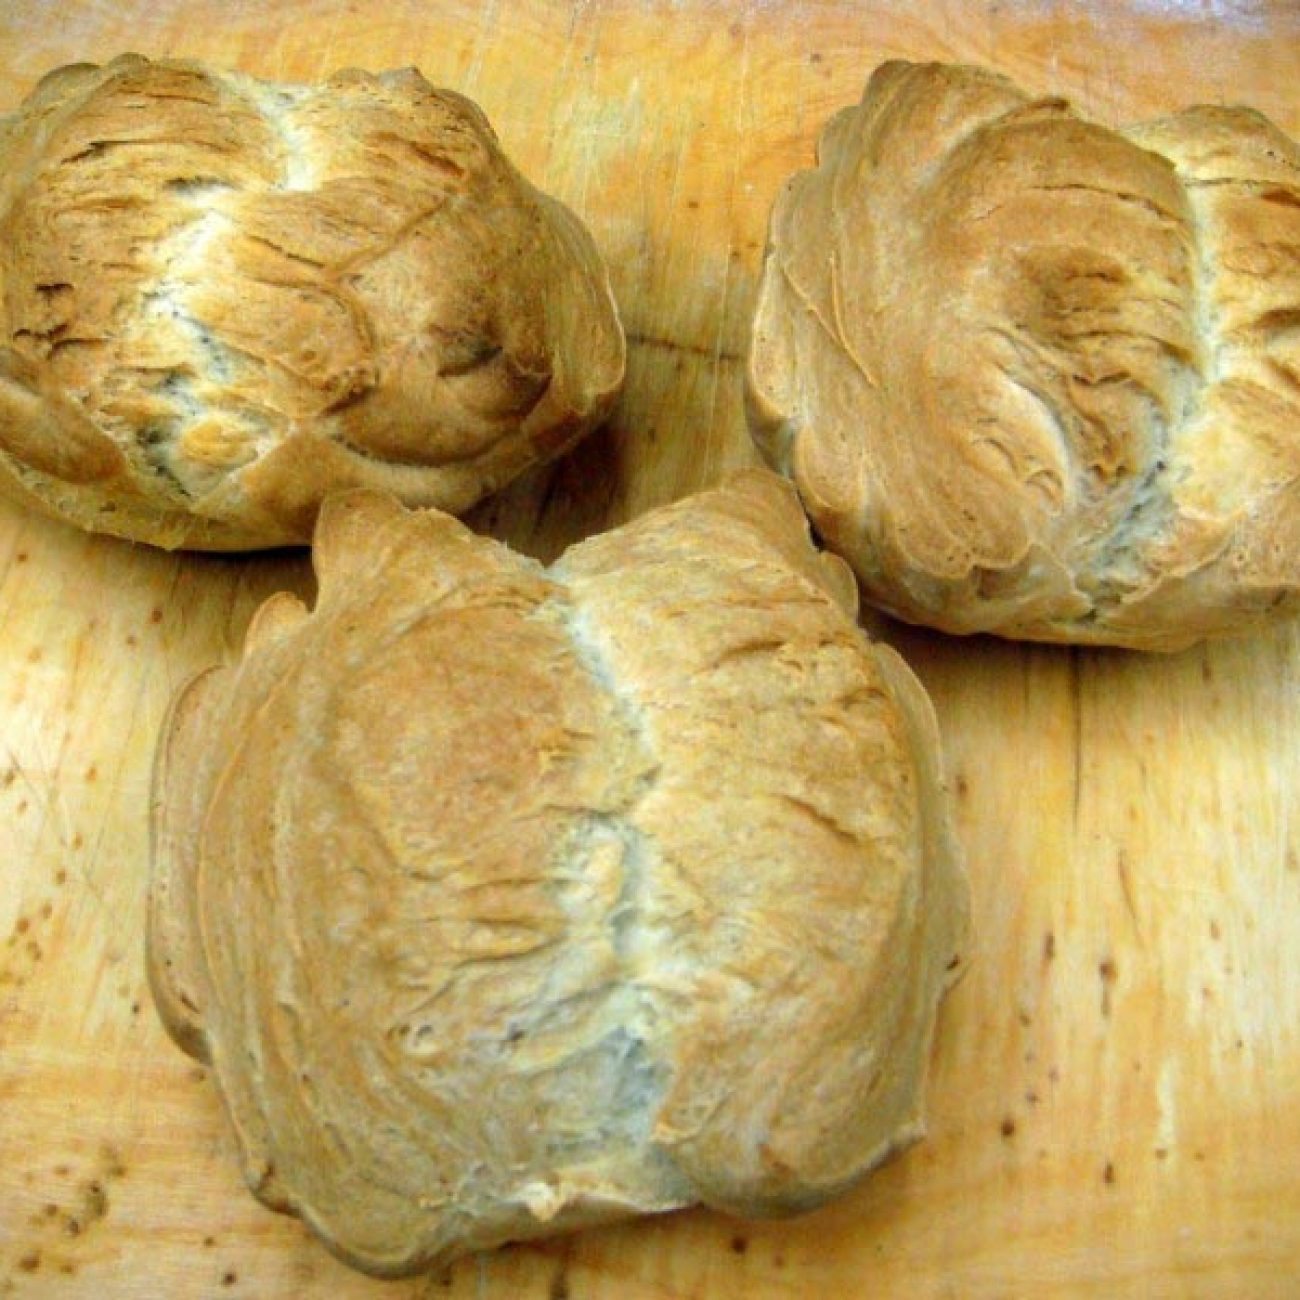 Video recipe for hard dough bread